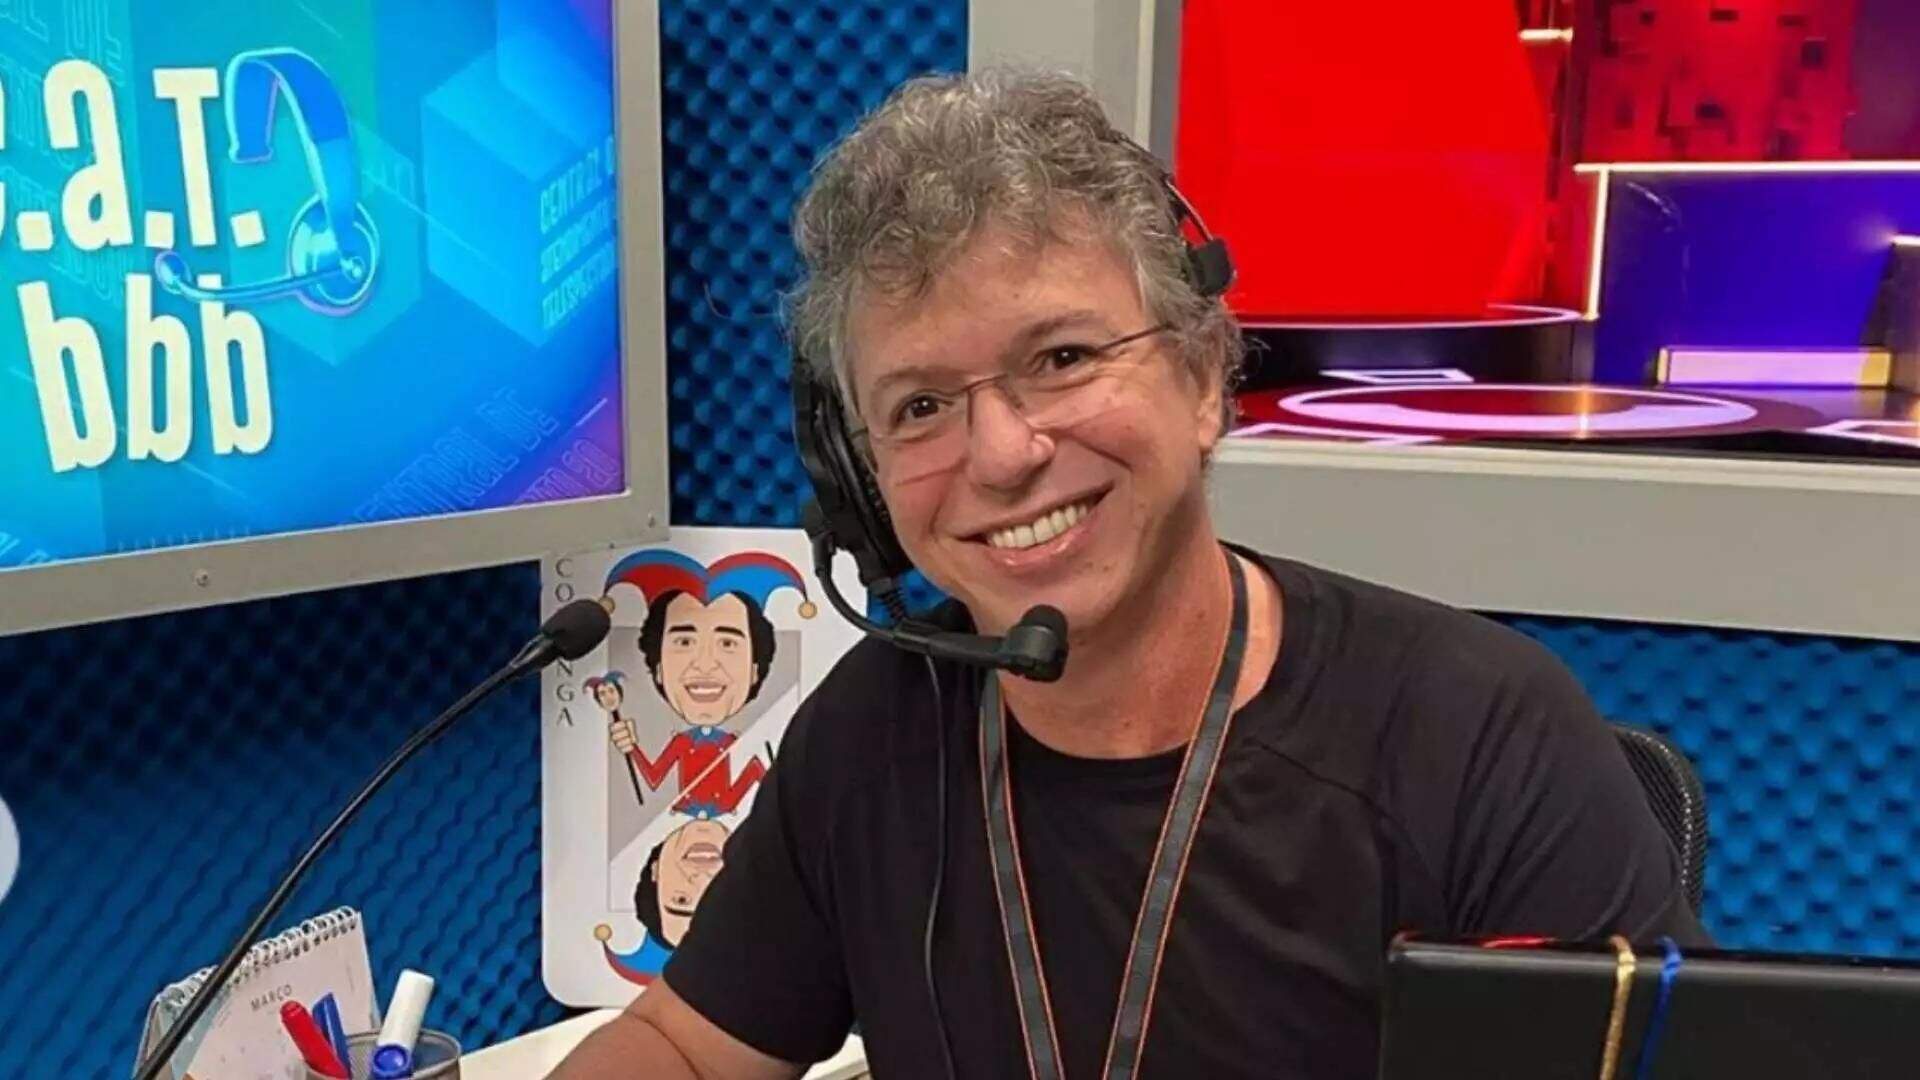 Pouco antes da estreia de A Fazenda, Boninho revela que BBB 23 vai começar antes da data prevista - Metropolitana FM